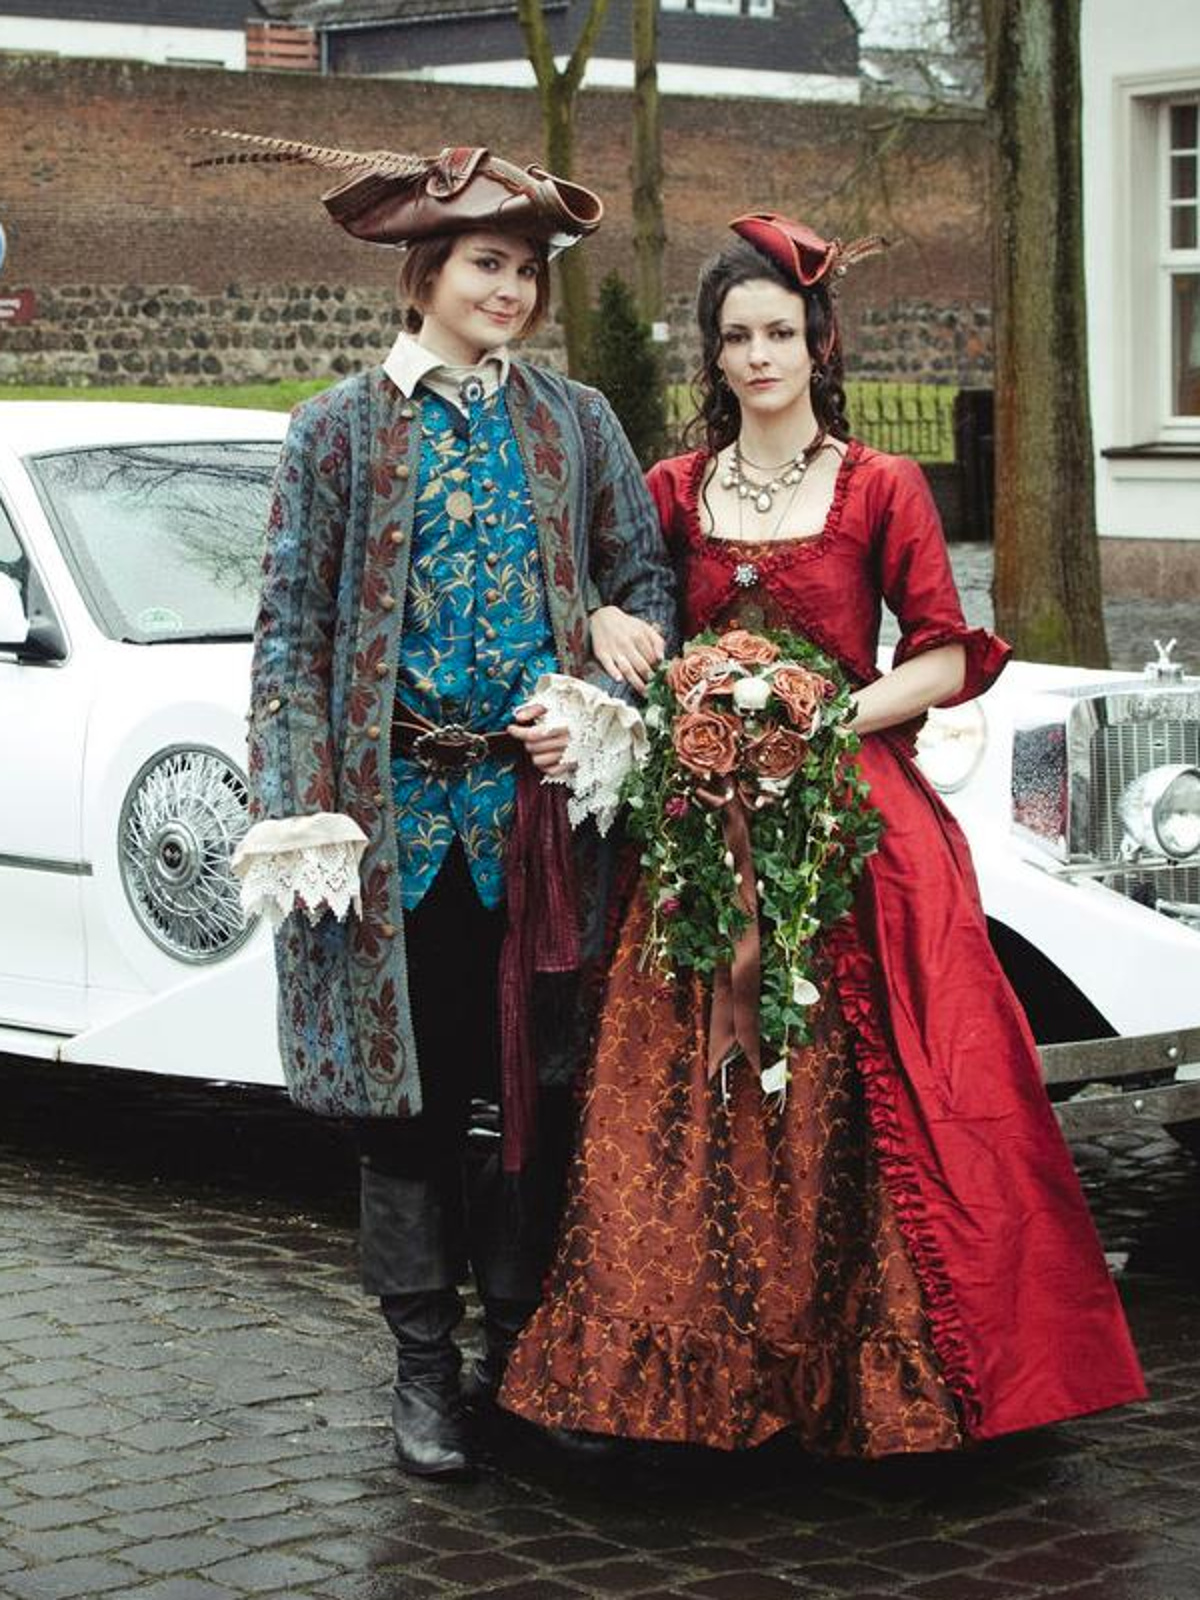 Bild: Hochzeitspaar im Piratenstil.